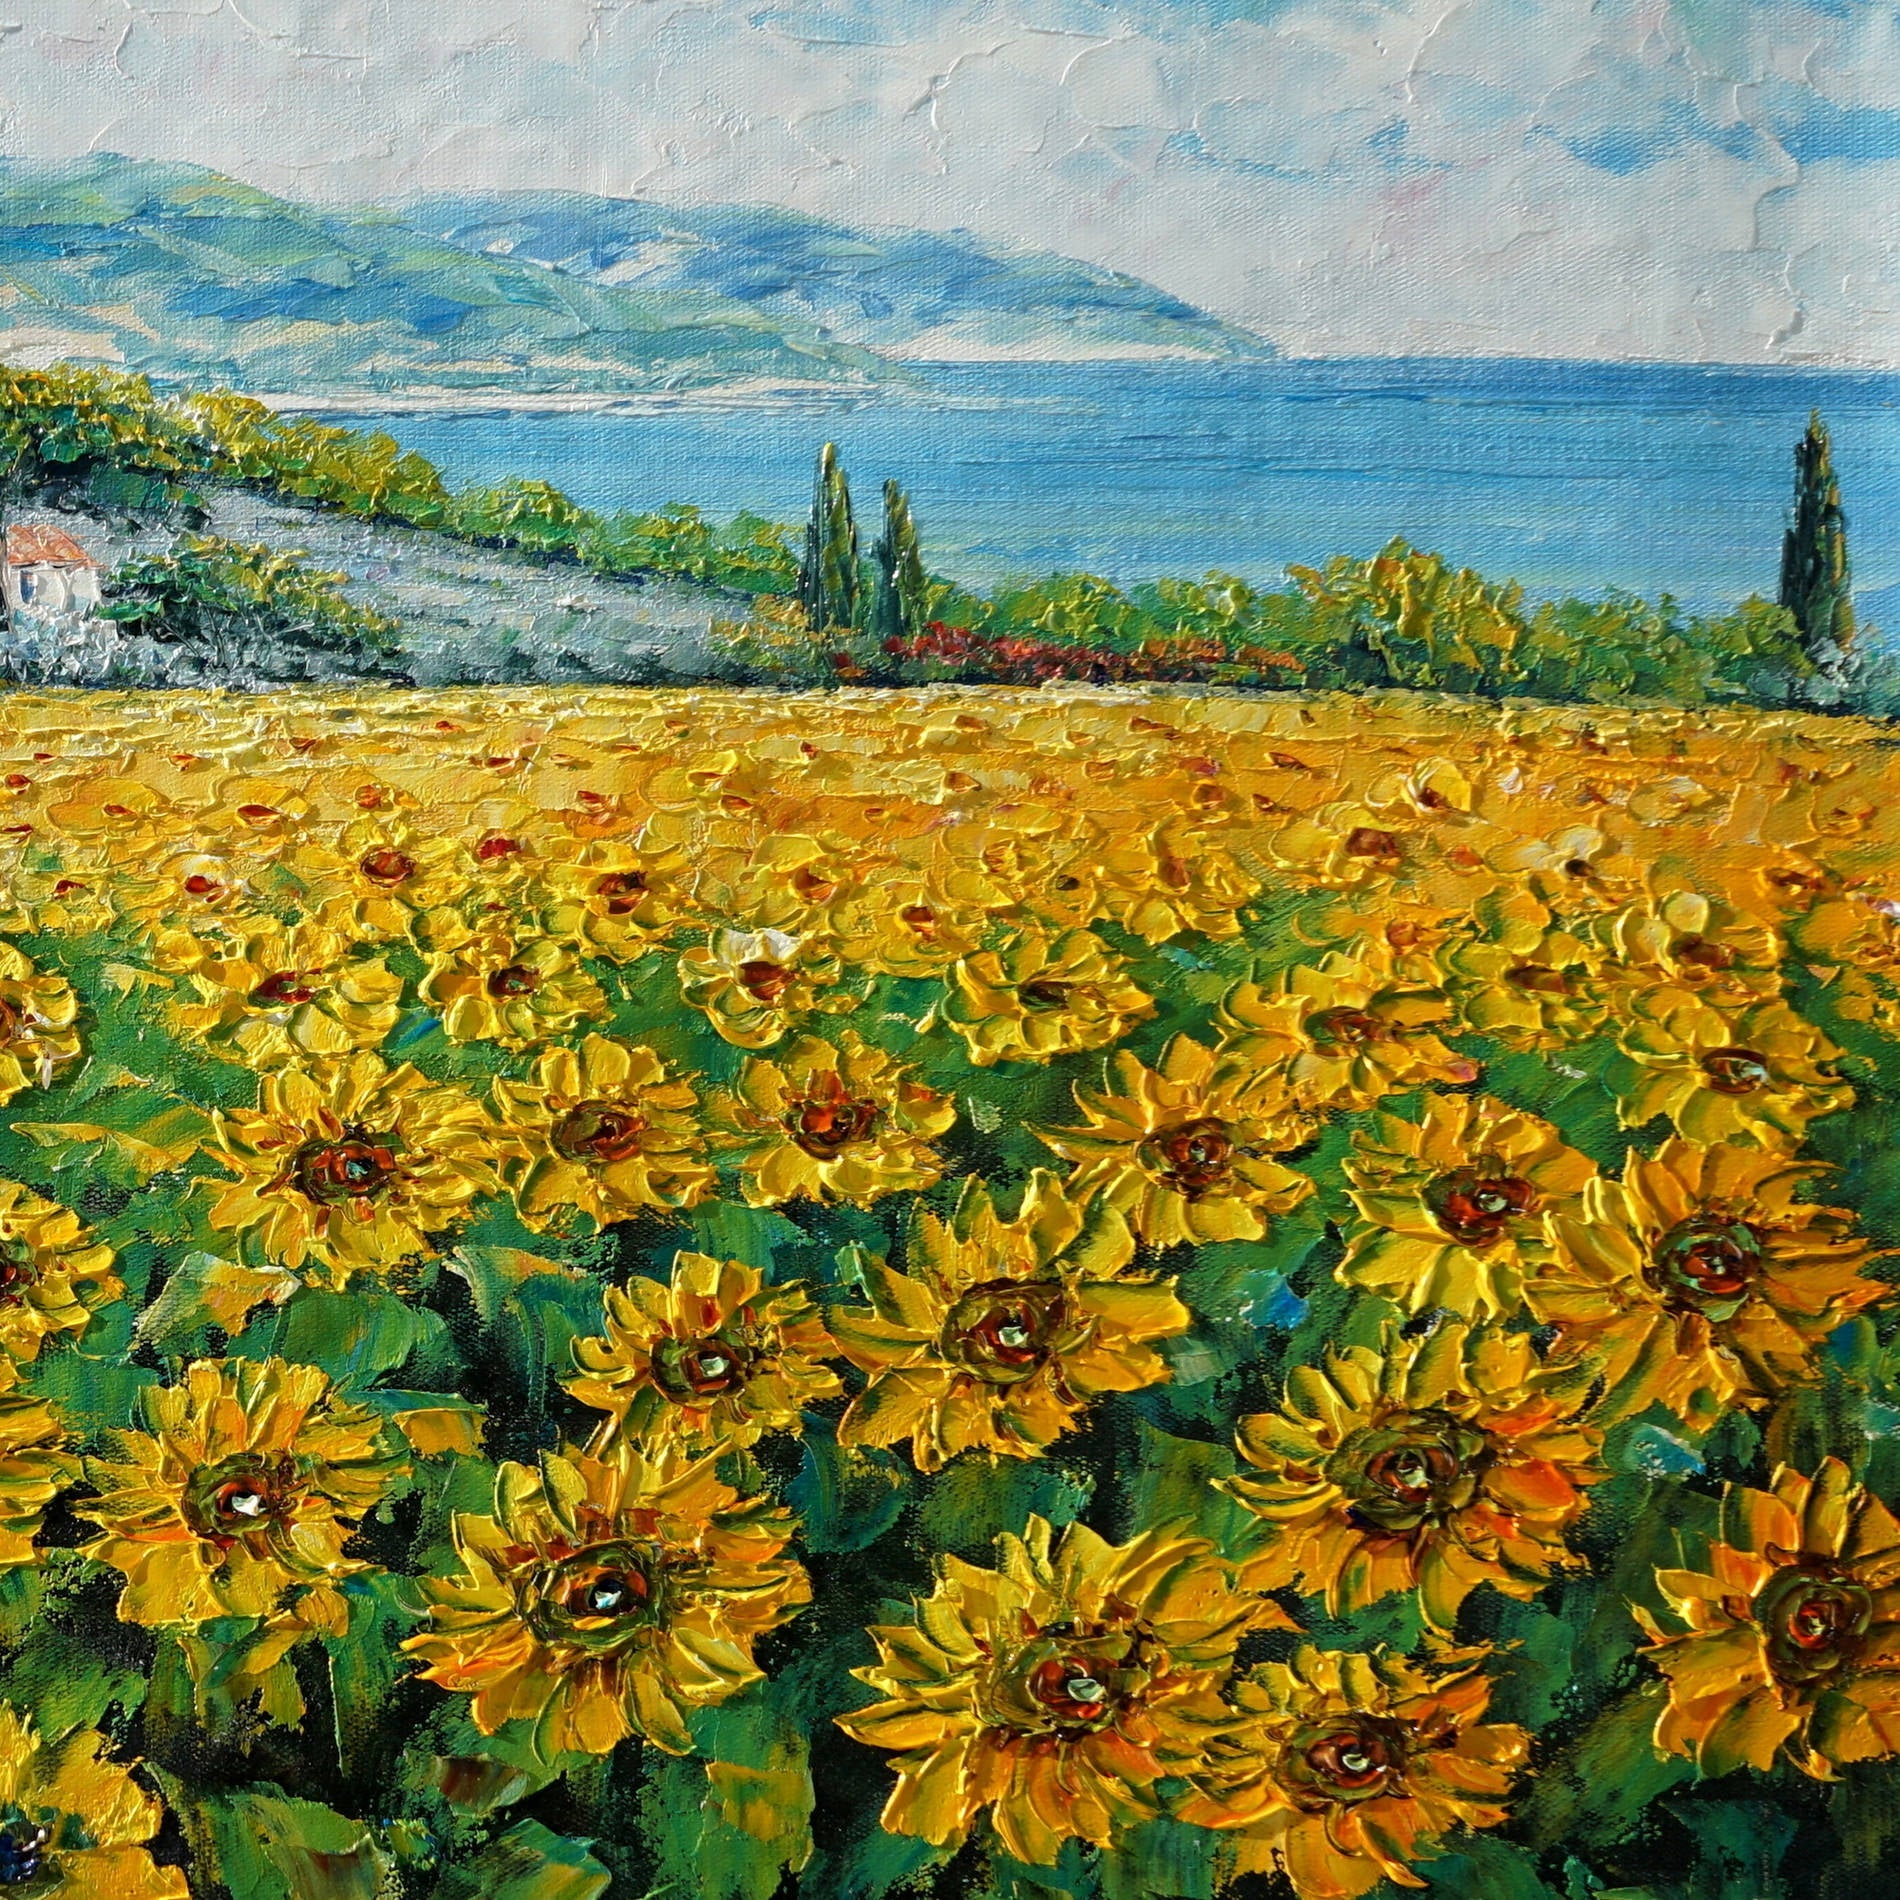 Dipinto di un campo di girasoli con paesaggio collinare e mare sullo sfondo